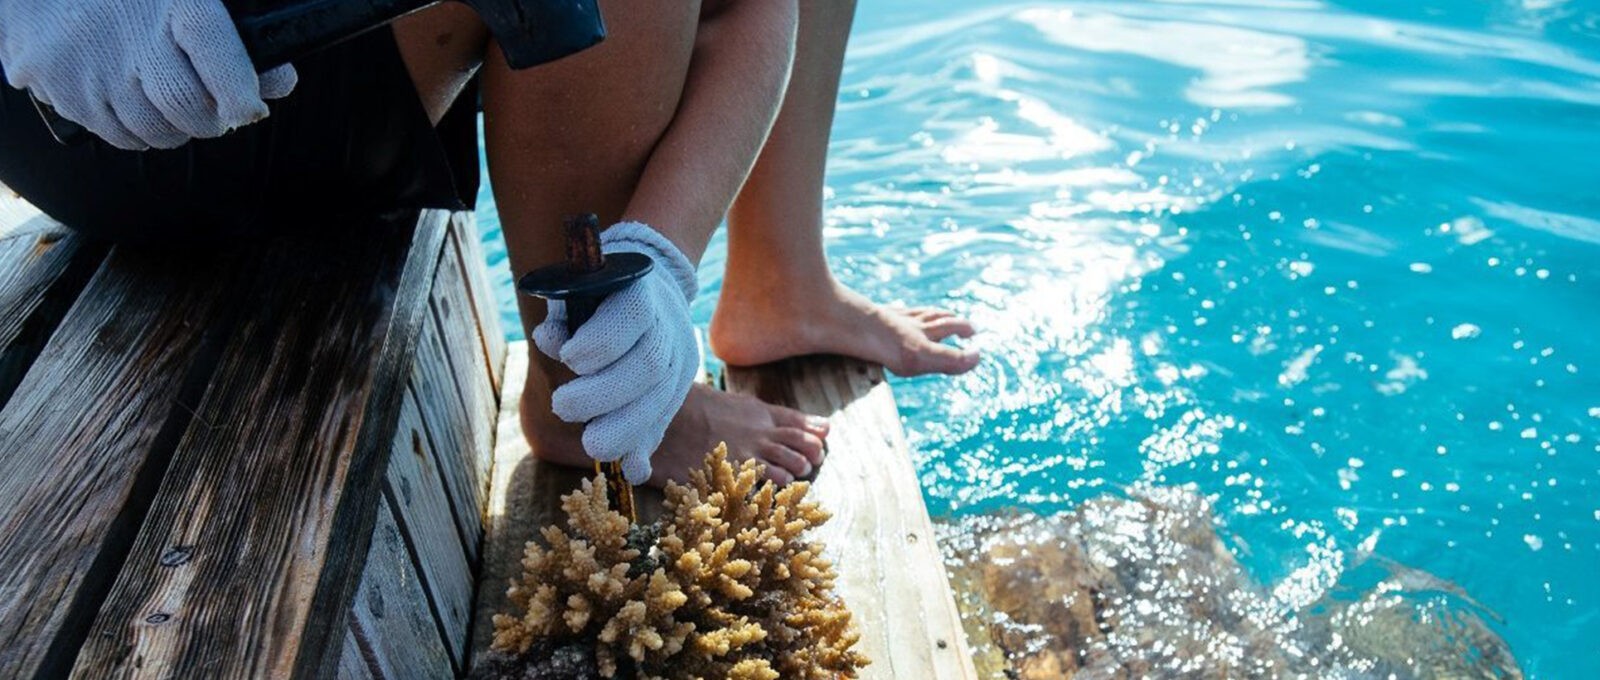 Anti-Plastic Paradise -Gili Lankanfushi Celebrates World Oceans Day With Eco-Friendly Initiatives